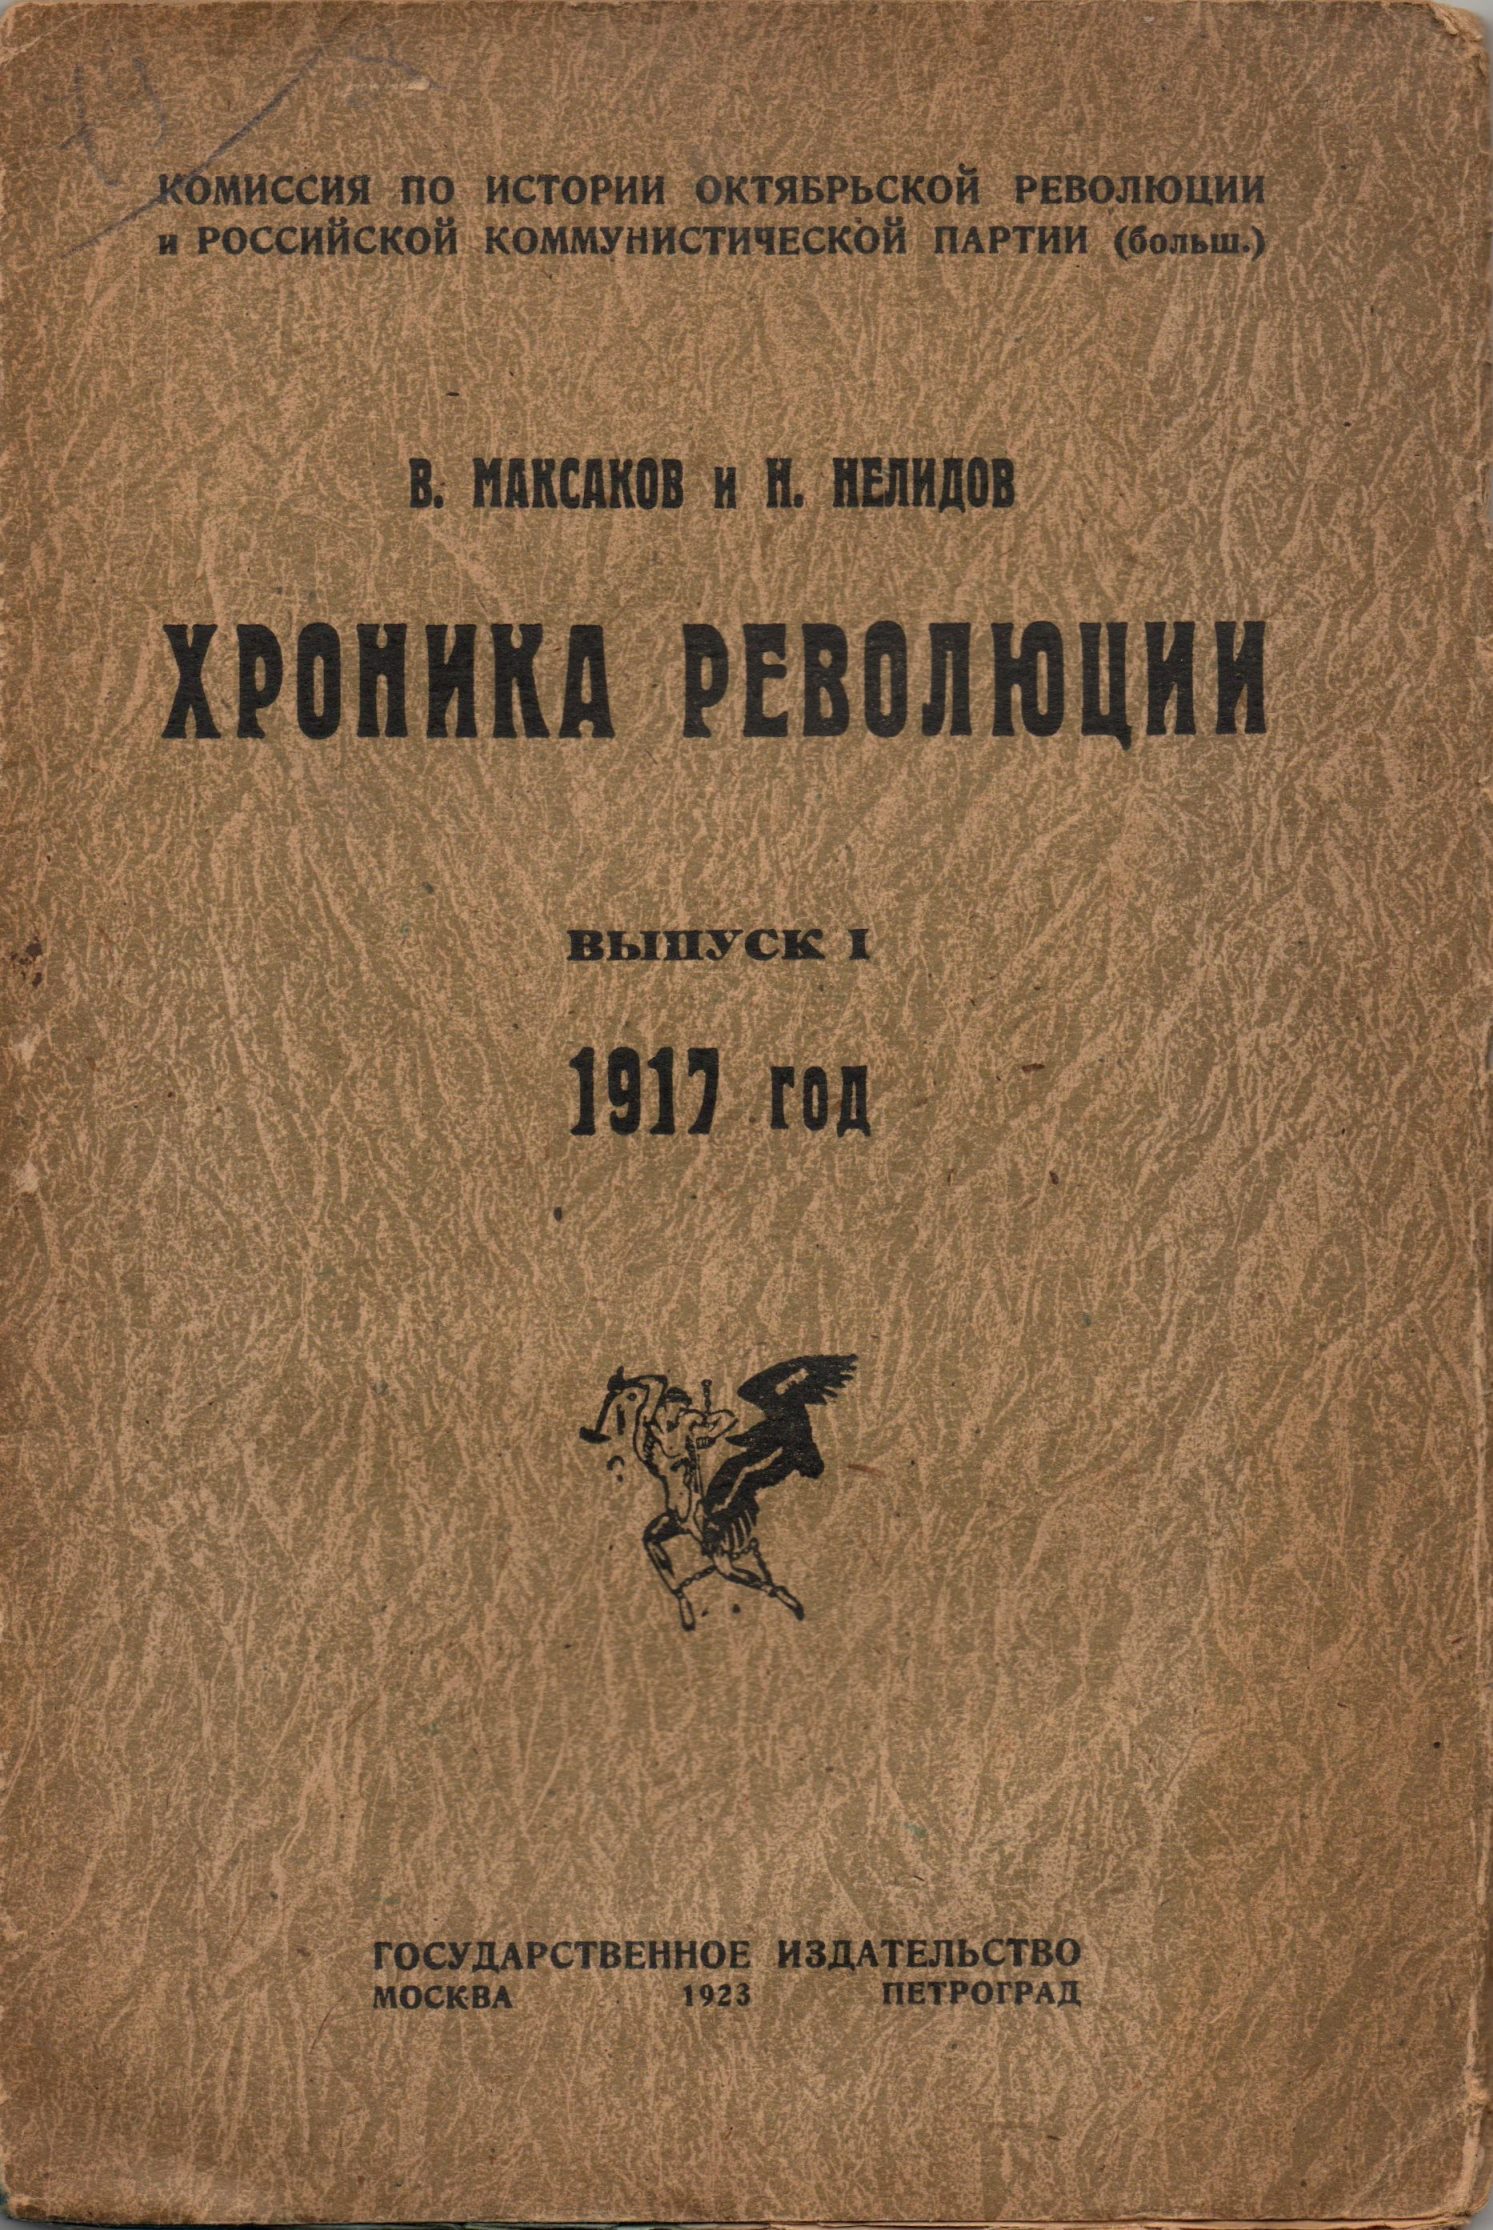 Книга "Максаков В., Нелидов Н. "Хроника революции. 1917". Вып.1."